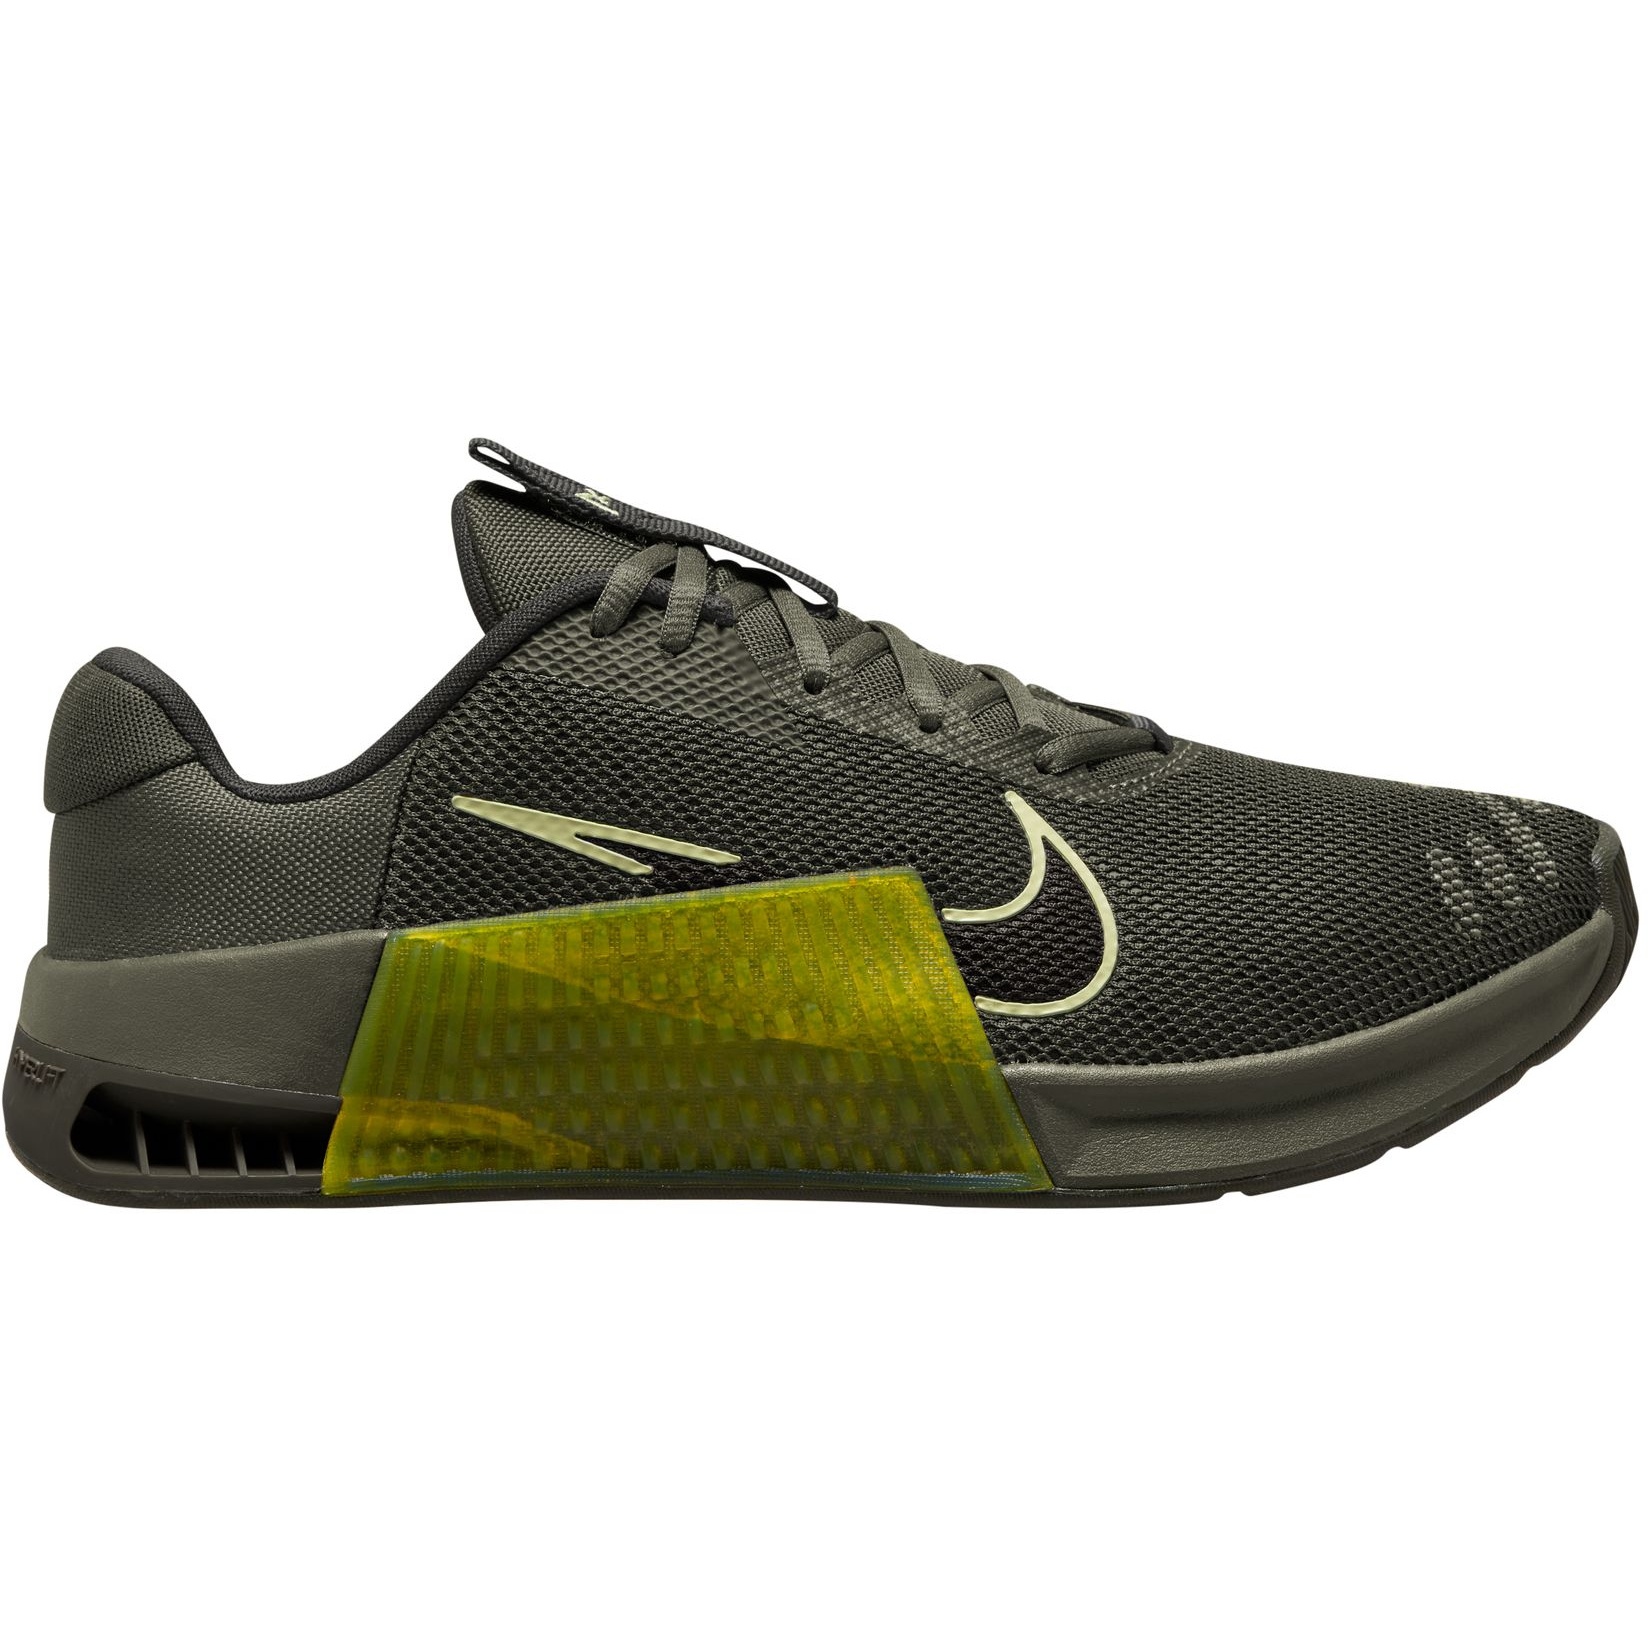 Productfoto van Nike Metcon 9 Fitnessschoenen Heren - olive/sequoia-high voltage DZ2617-300